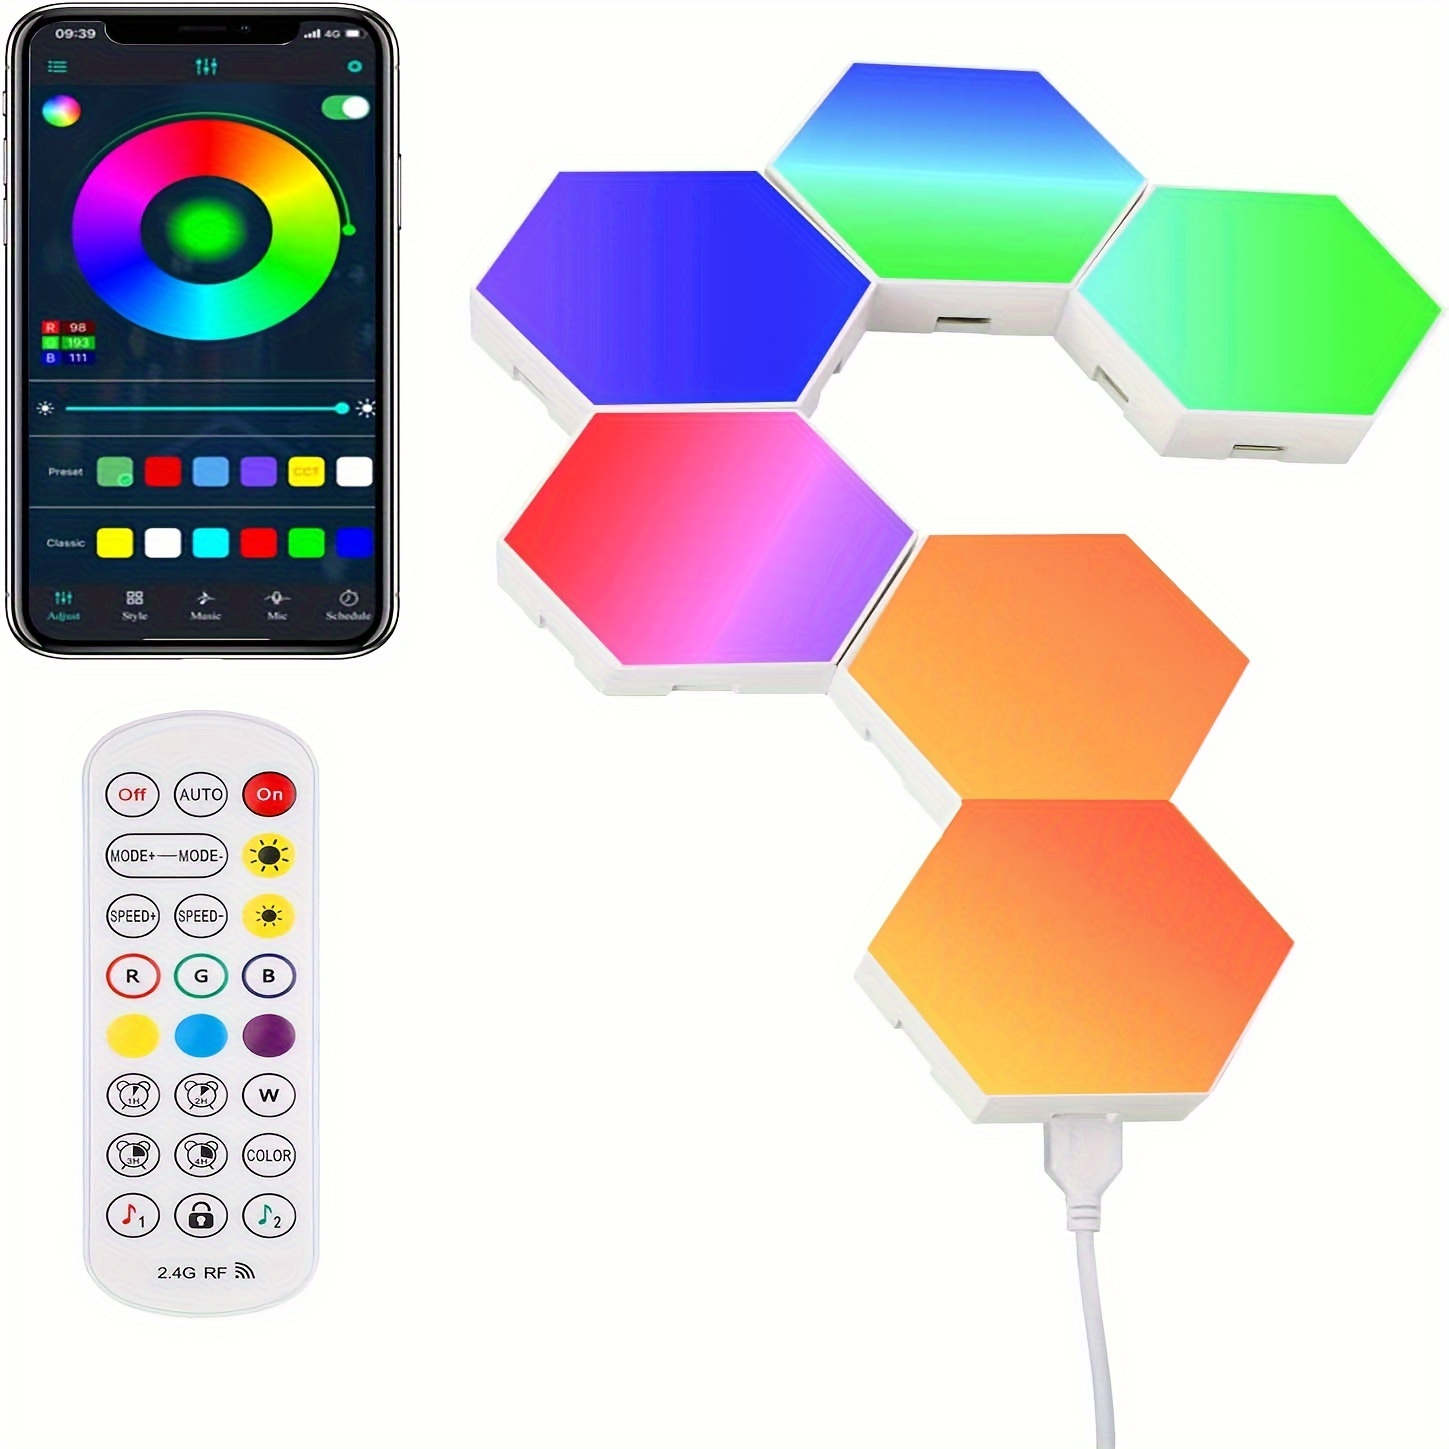 Lumière LED Hexagonale, Lampes murales Hexagonales LED avec télécommande,  Lampe de jeu RGB intelligente Géométrie de bricolage Épissage de la lumière  quantique avec alimentation USB pour G